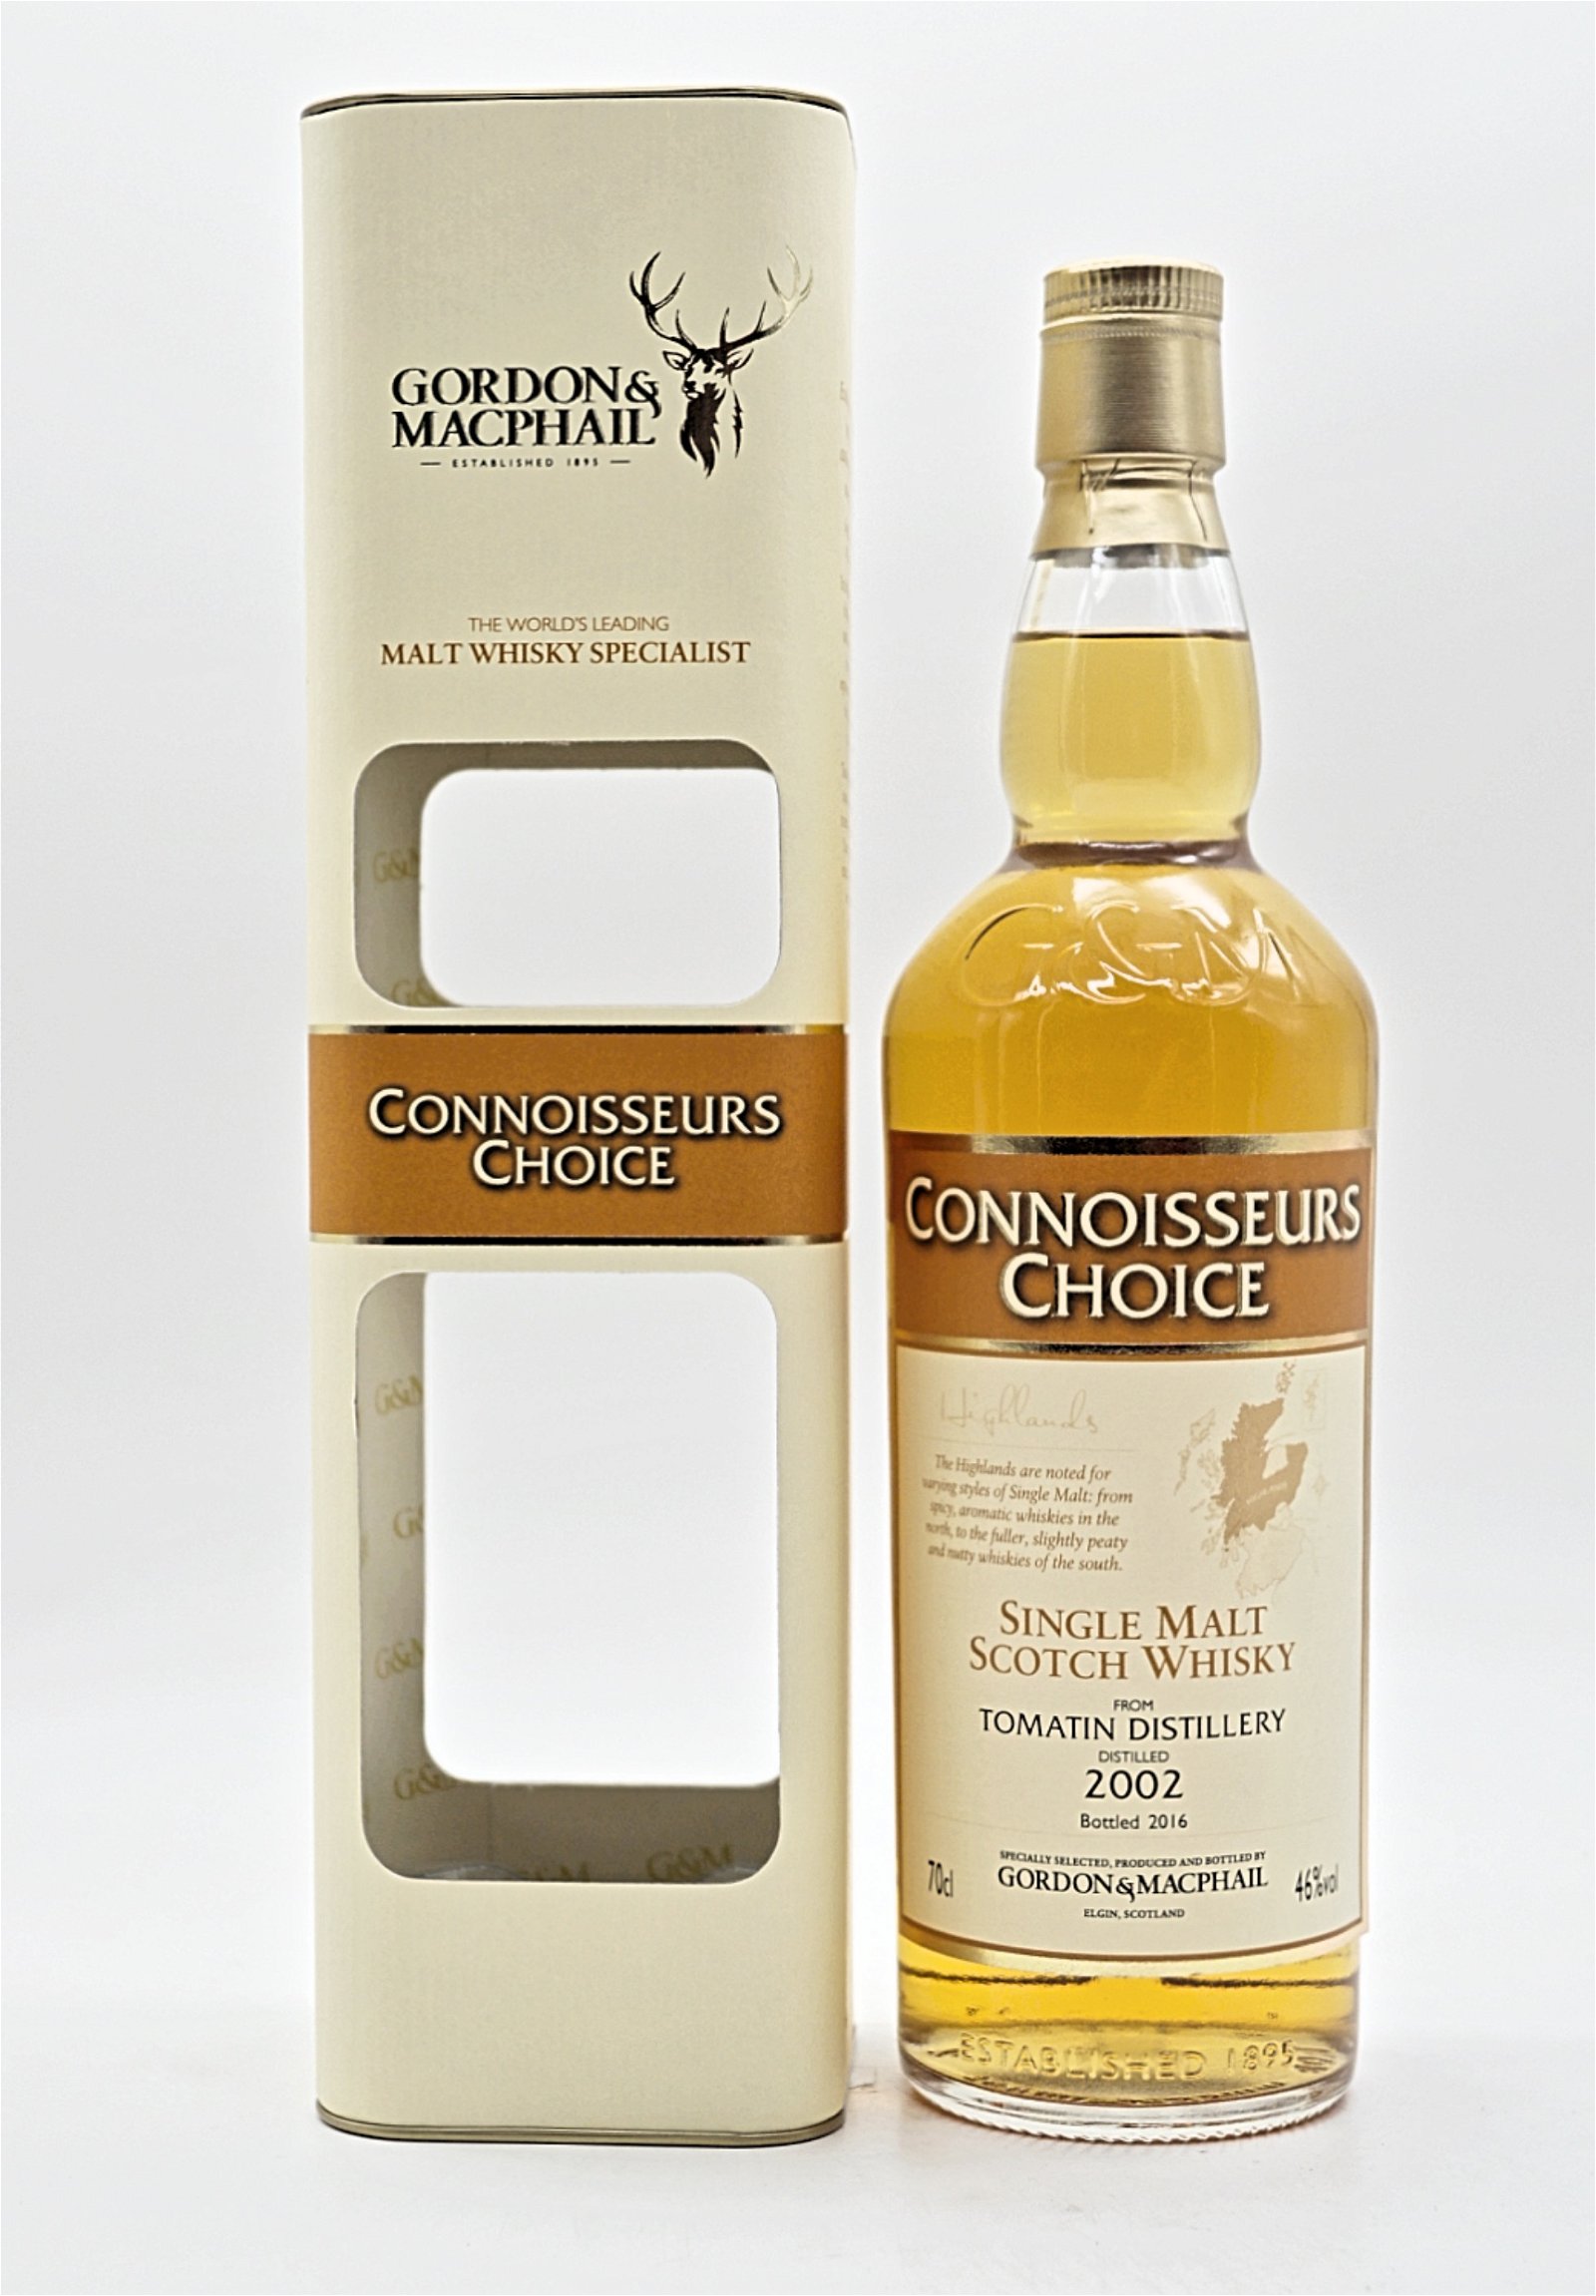 Gordon & Macphail Connoisseurs Choice Tomatin Distillery 2002/2016 Single Malt Scotch Whisky